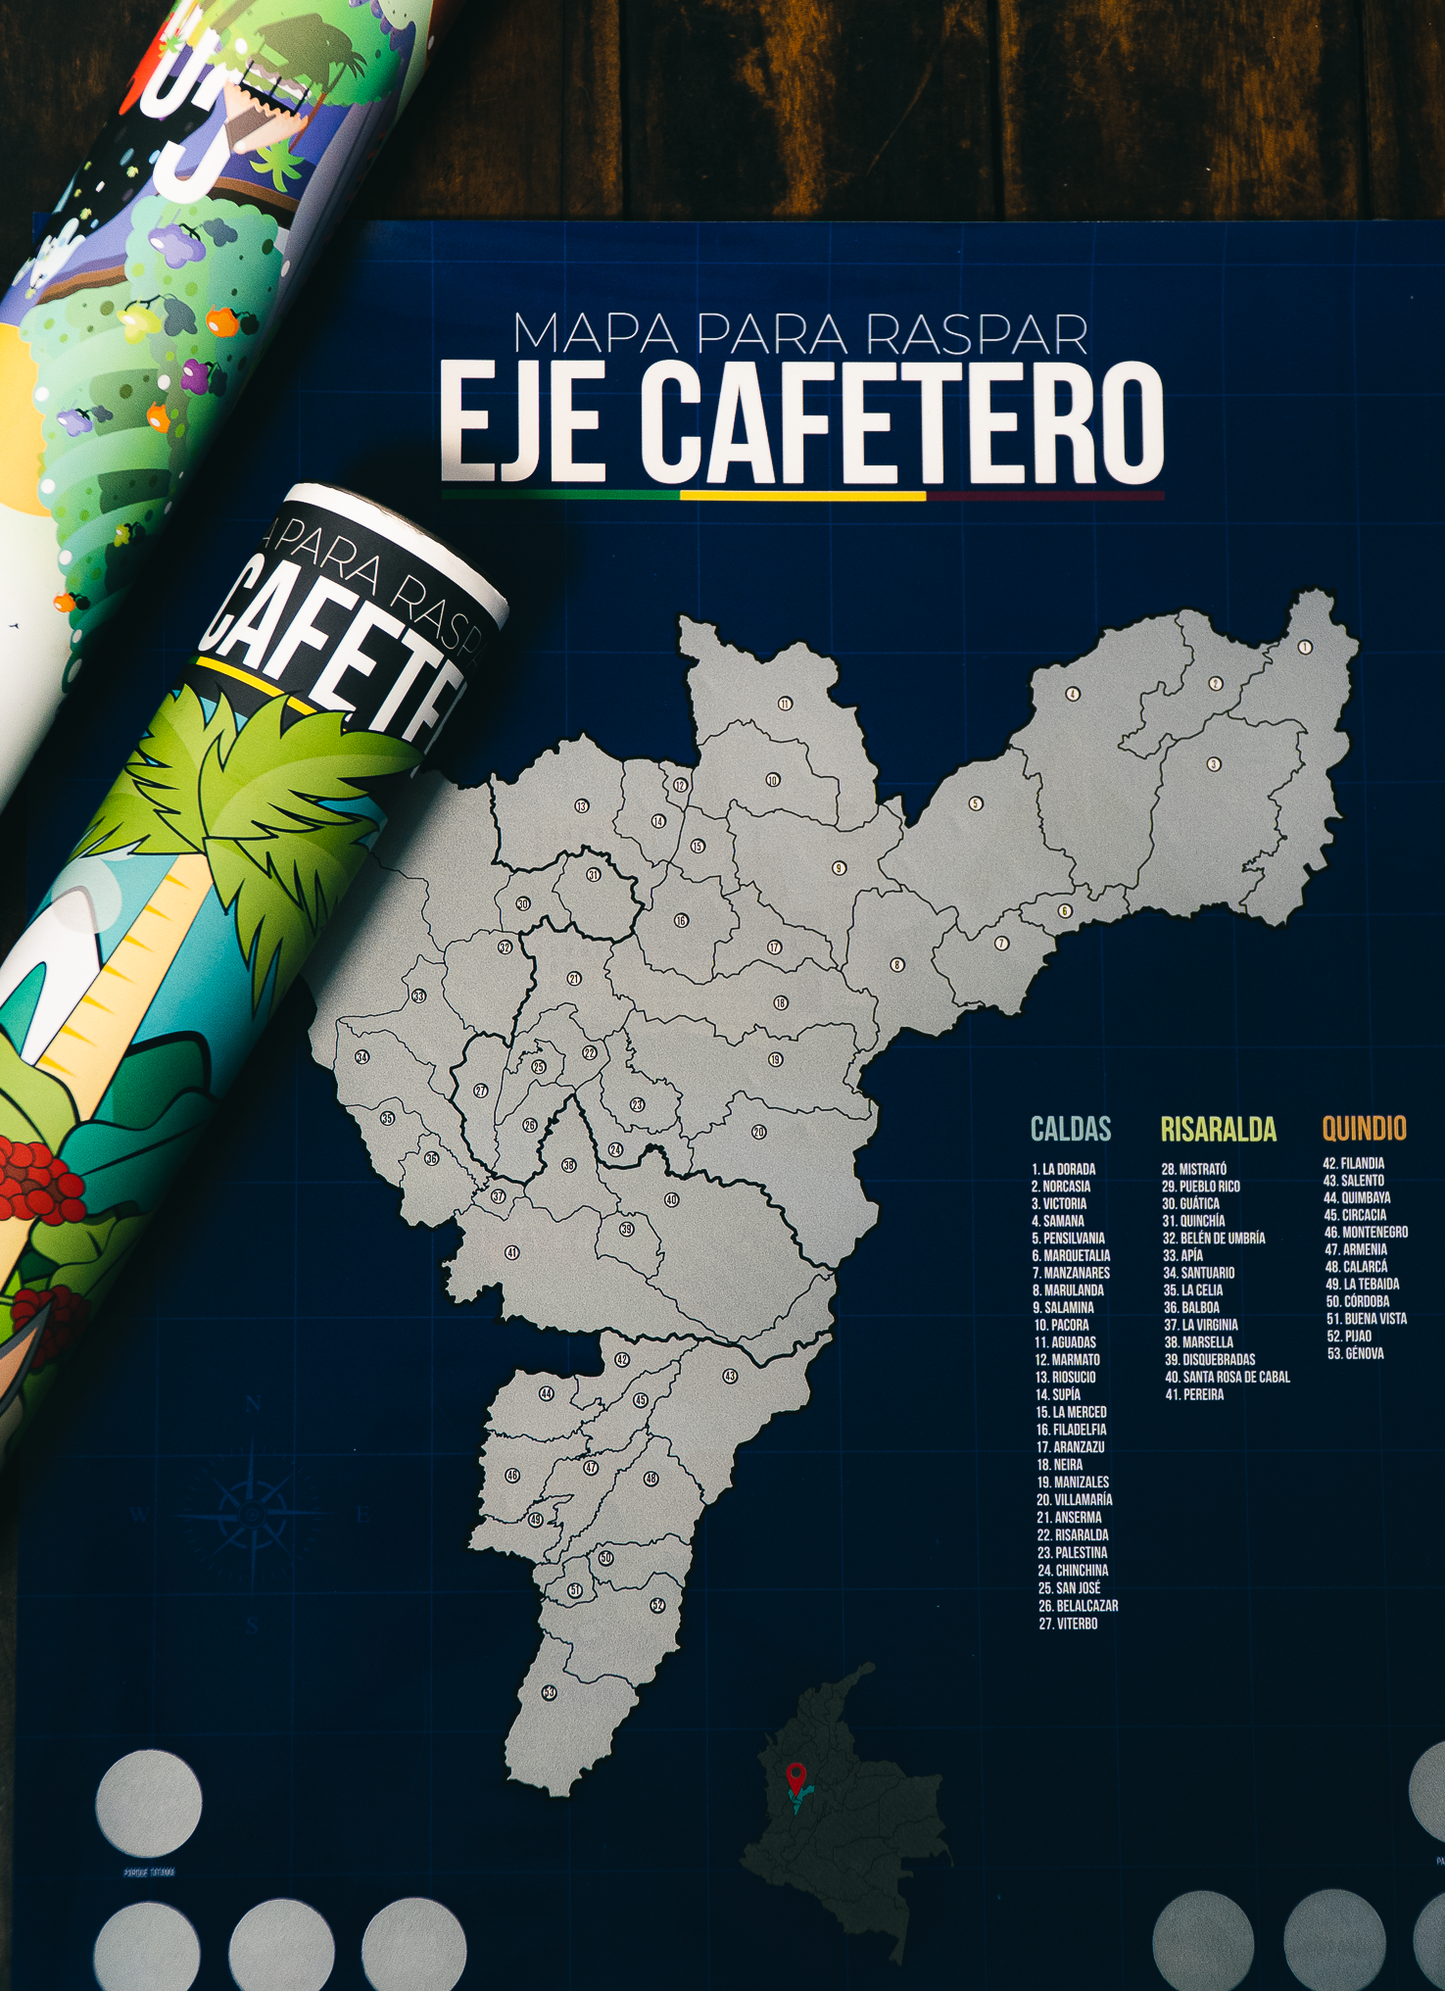 Mapa del Eje Cafetero Raspable